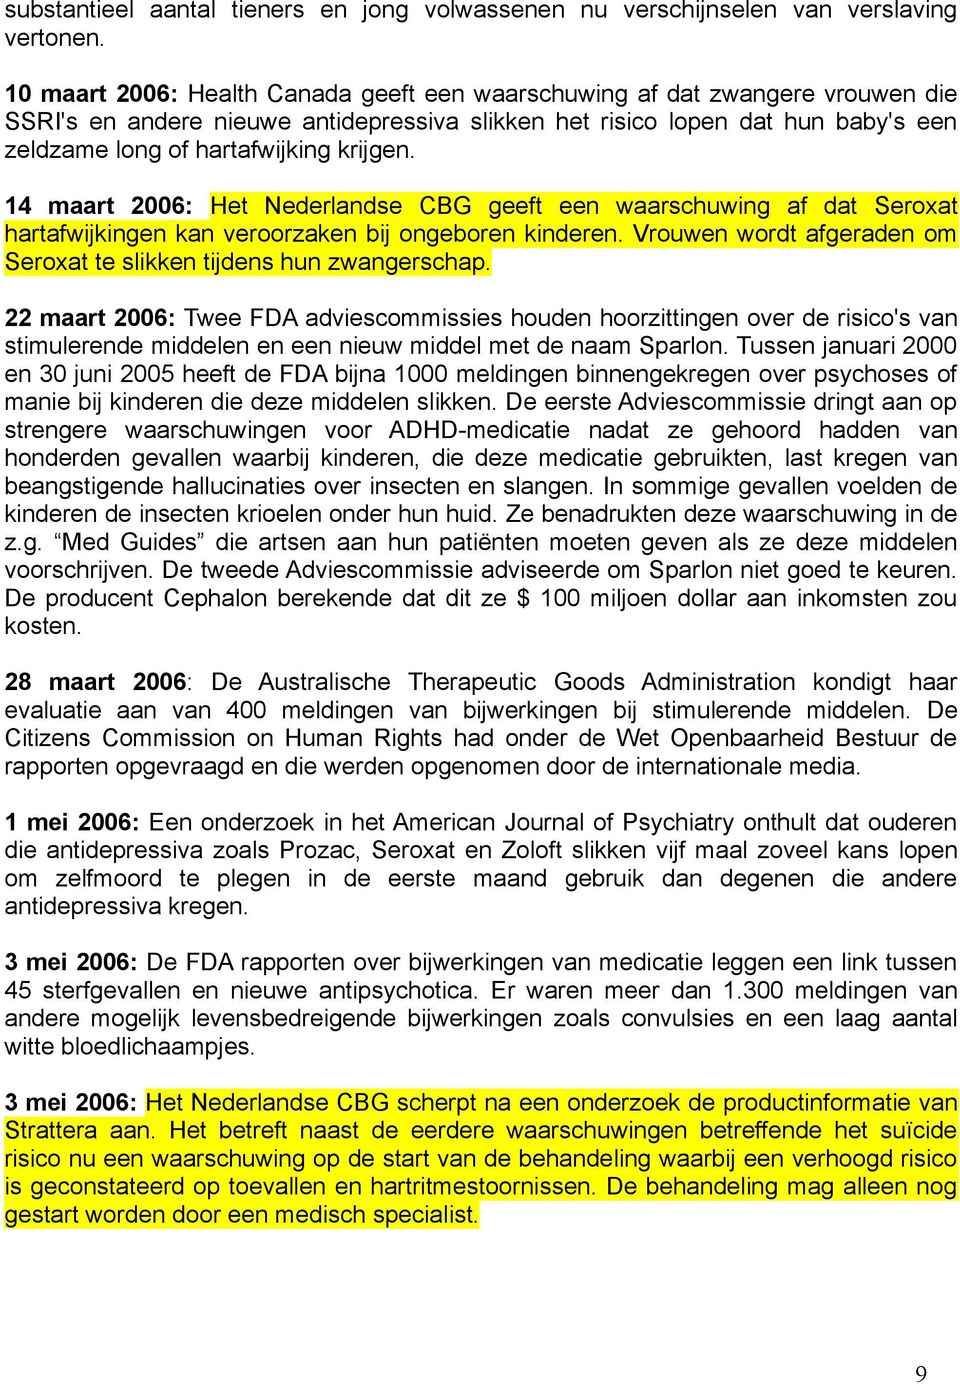 krijgen. 14 maart 2006: Het Nederlandse CBG geeft een waarschuwing af dat Seroxat hartafwijkingen kan veroorzaken bij ongeboren kinderen.